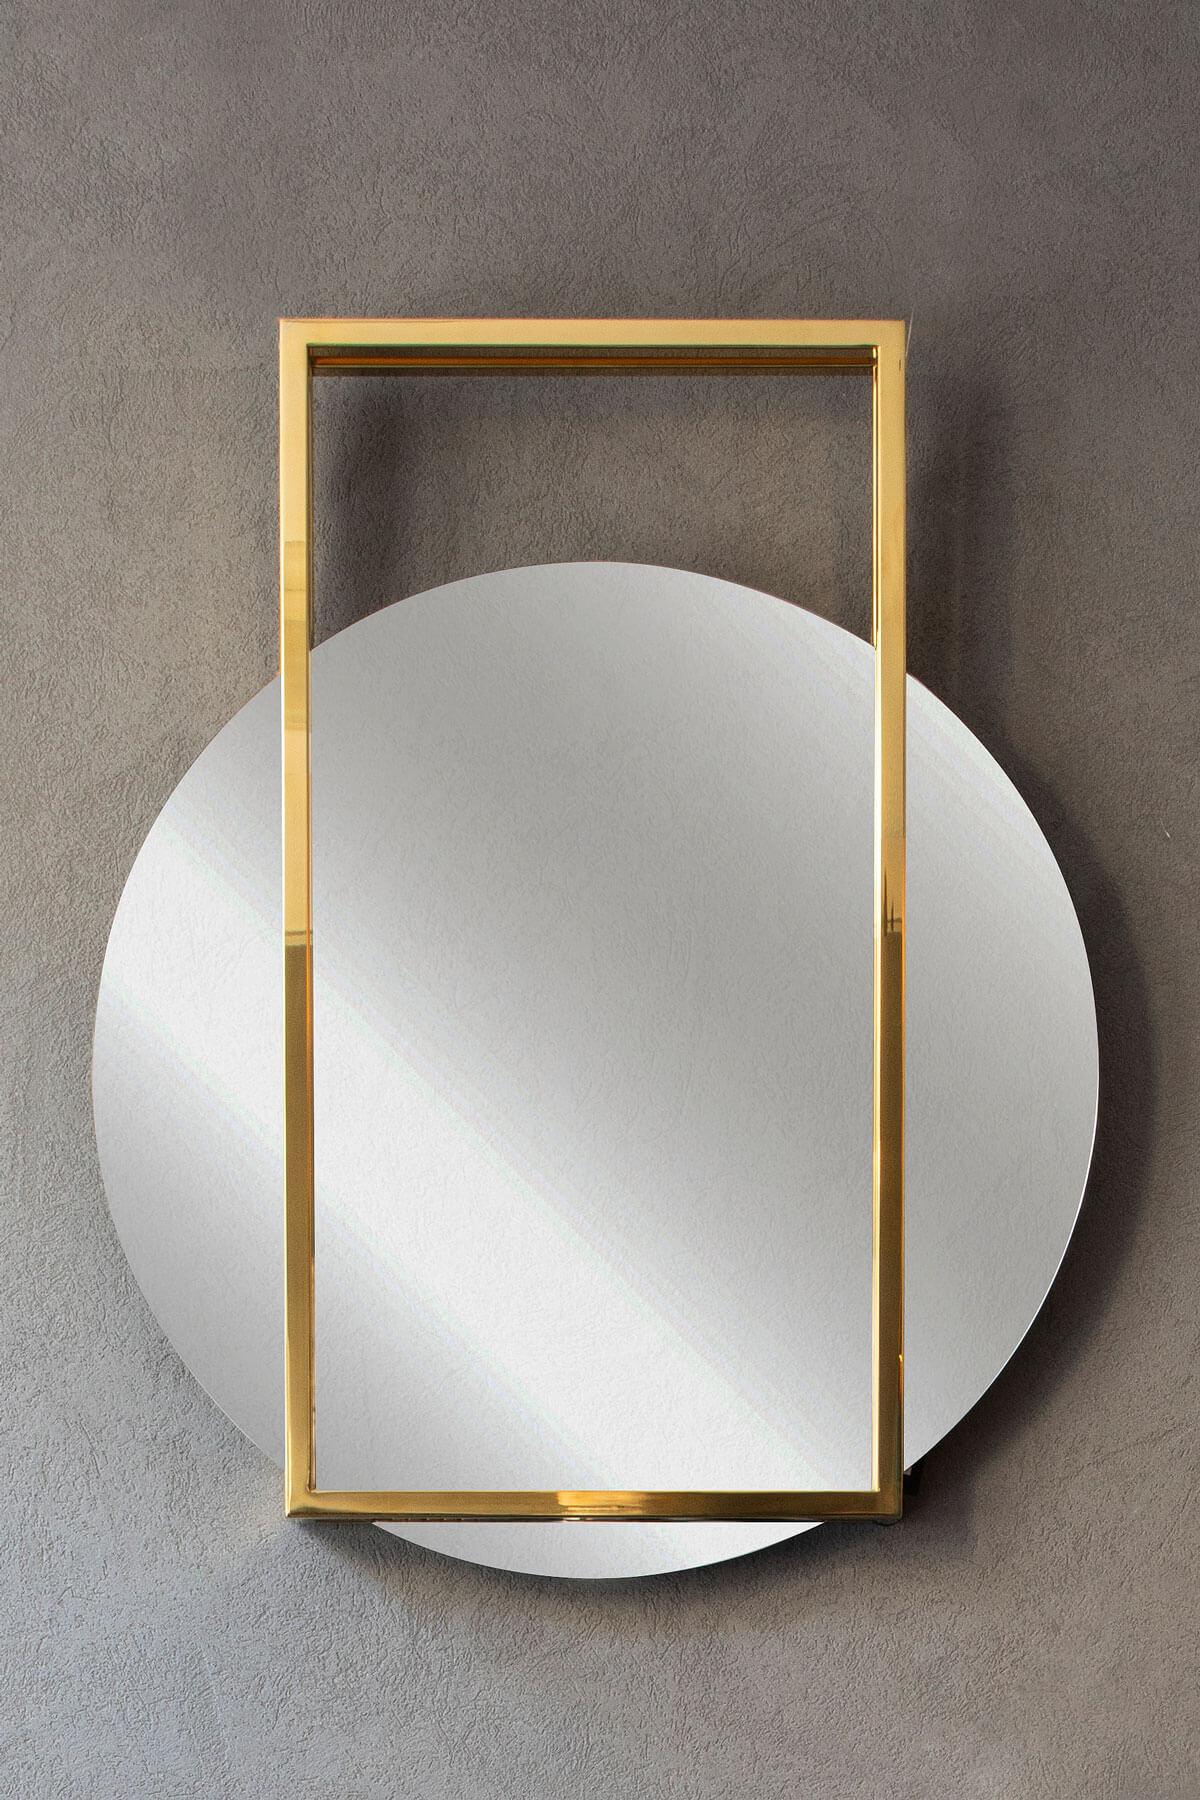 Der Famed-Spiegel, der von den Liebhabern der Geometrie bevorzugt wird, zeichnet sich durch sein elegantes und minimalistisches Design aus. Der Spiegel, der in Harmonie mit der Famed-Konsole verwendet werden kann, ist eine der glänzenden Optionen